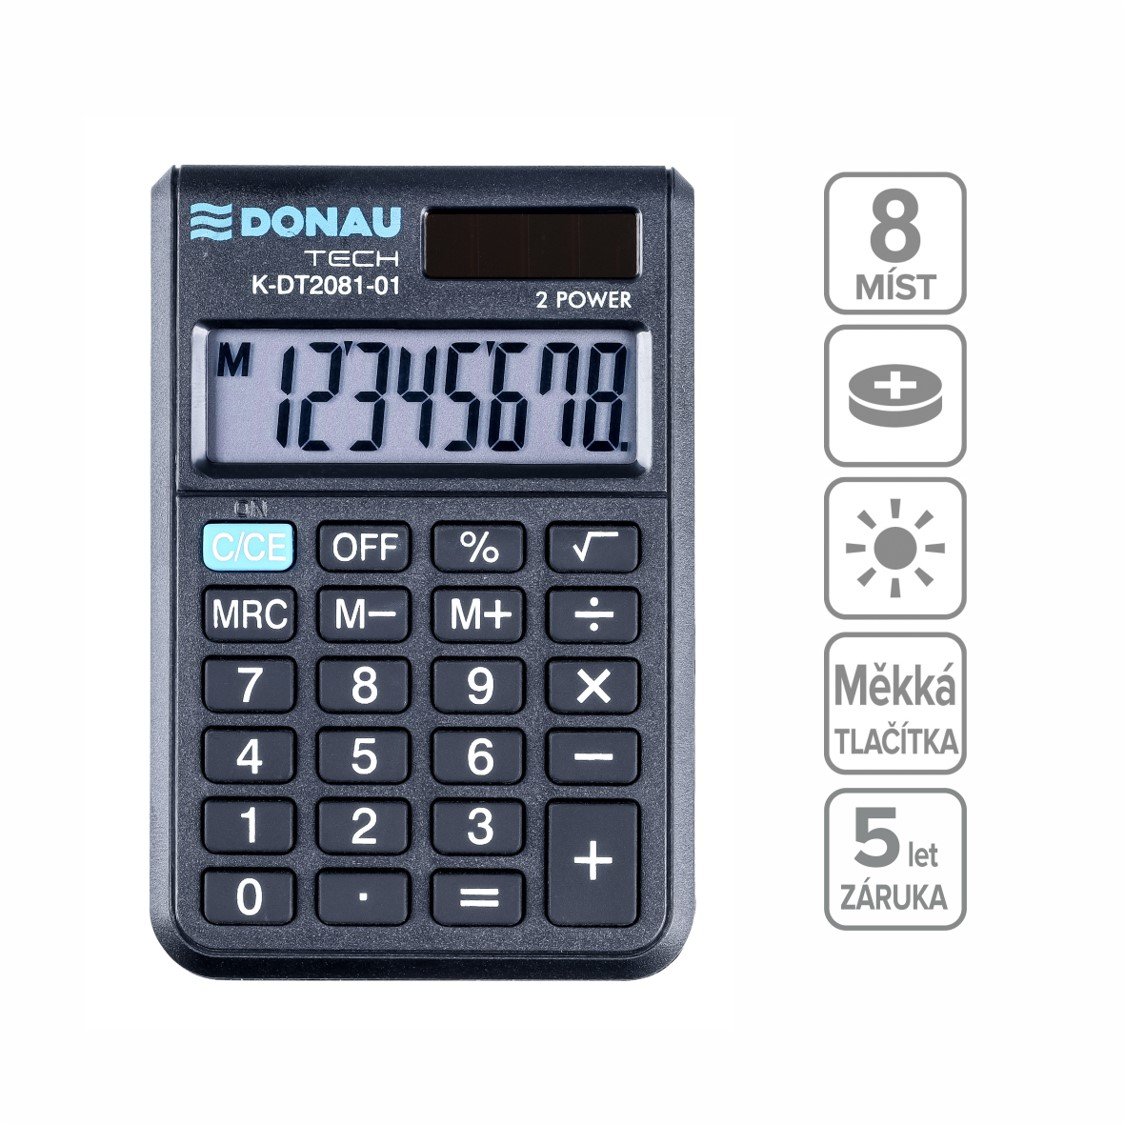 DONAU kapesní kalkulačka DONAU TECH 2081, 8místná, černá